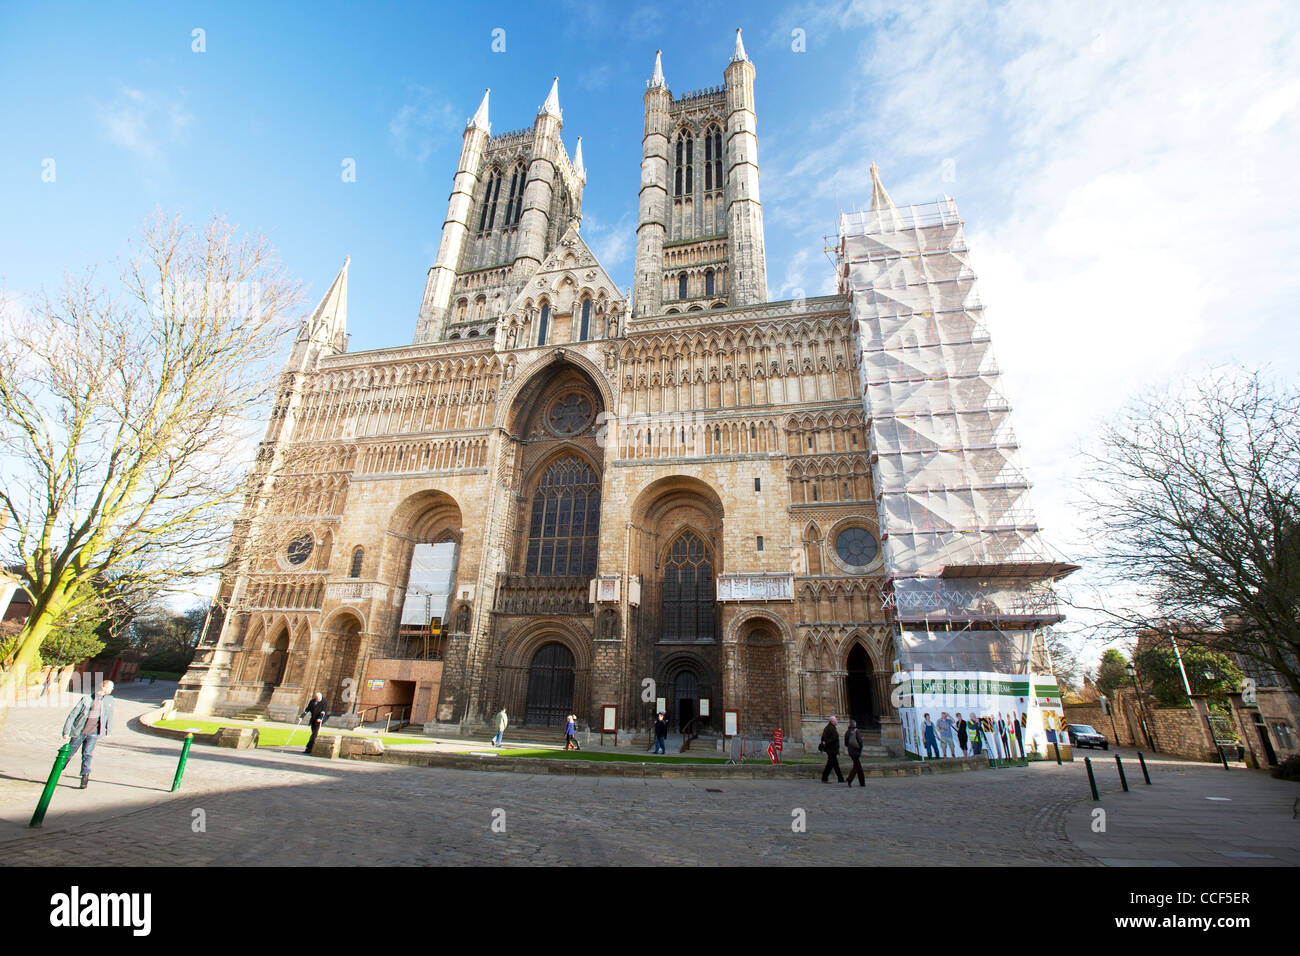 La Ville de Lincoln, Lincolnshire, Angleterre, la cathédrale de Lincoln, monument historique restauration tours gothique médiévale Banque D'Images